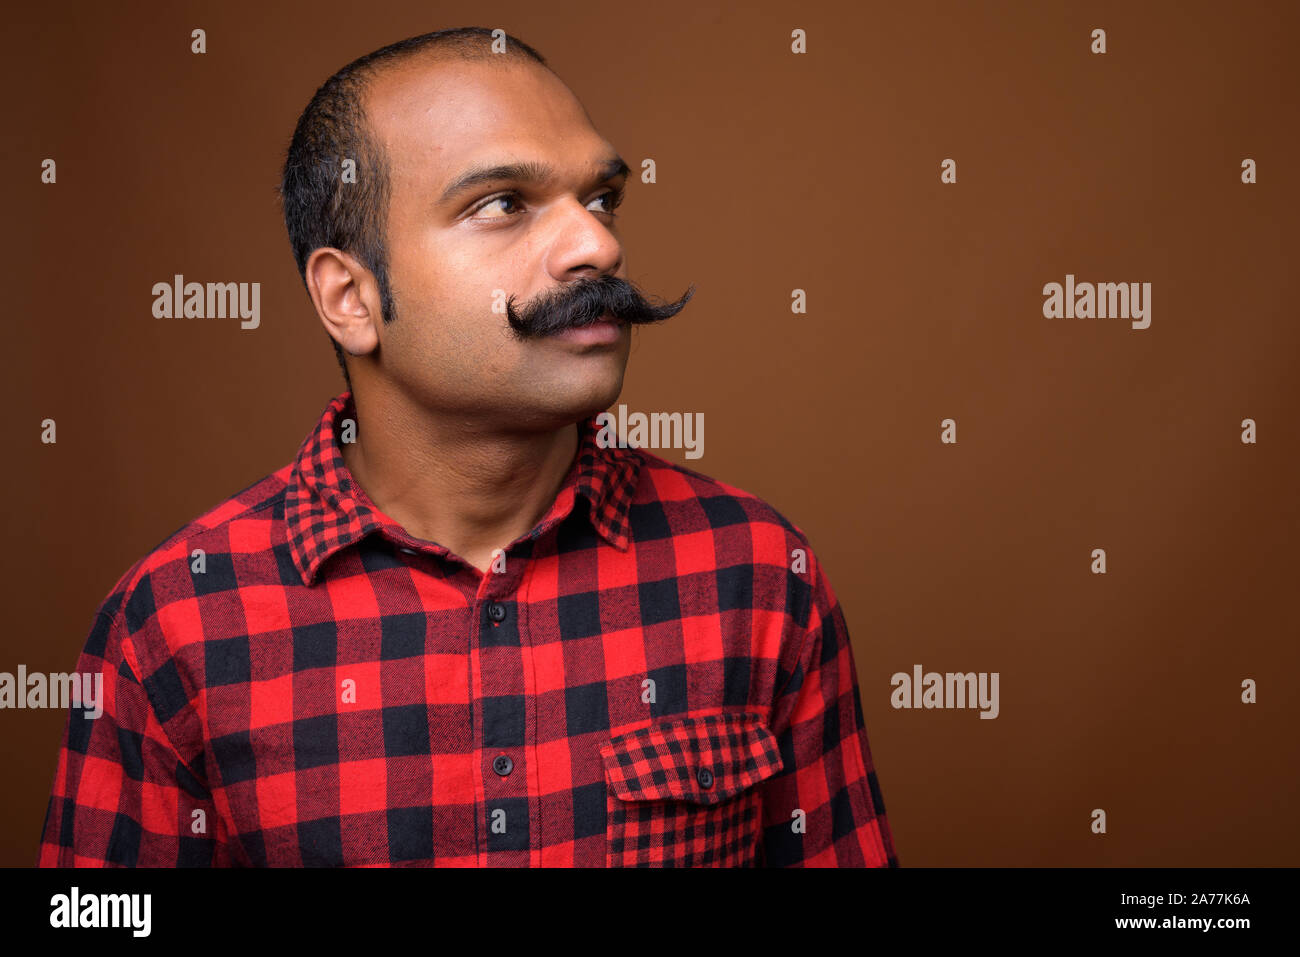 Cara de indio hipster hombre con bigote Foto de stock